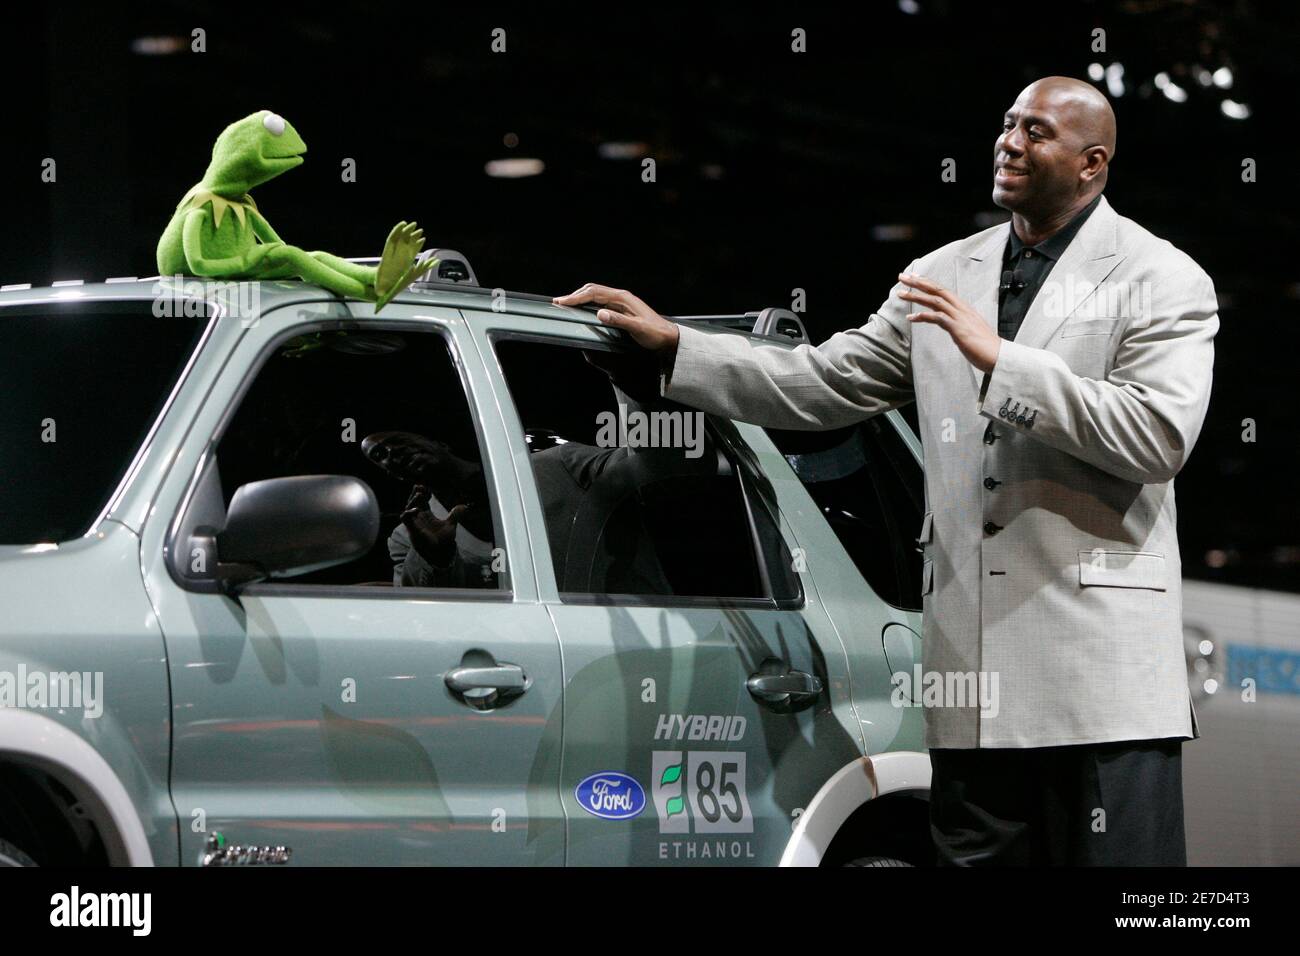 NBA-Legende Magic Johnson und Kermit der Frosch sprechen neben einem E85  Ethanol Ford Escape Hybrid auf der Chicago Auto Show 2006, 8. Februar 2006.  REUTERS/John Gress Stockfotografie - Alamy